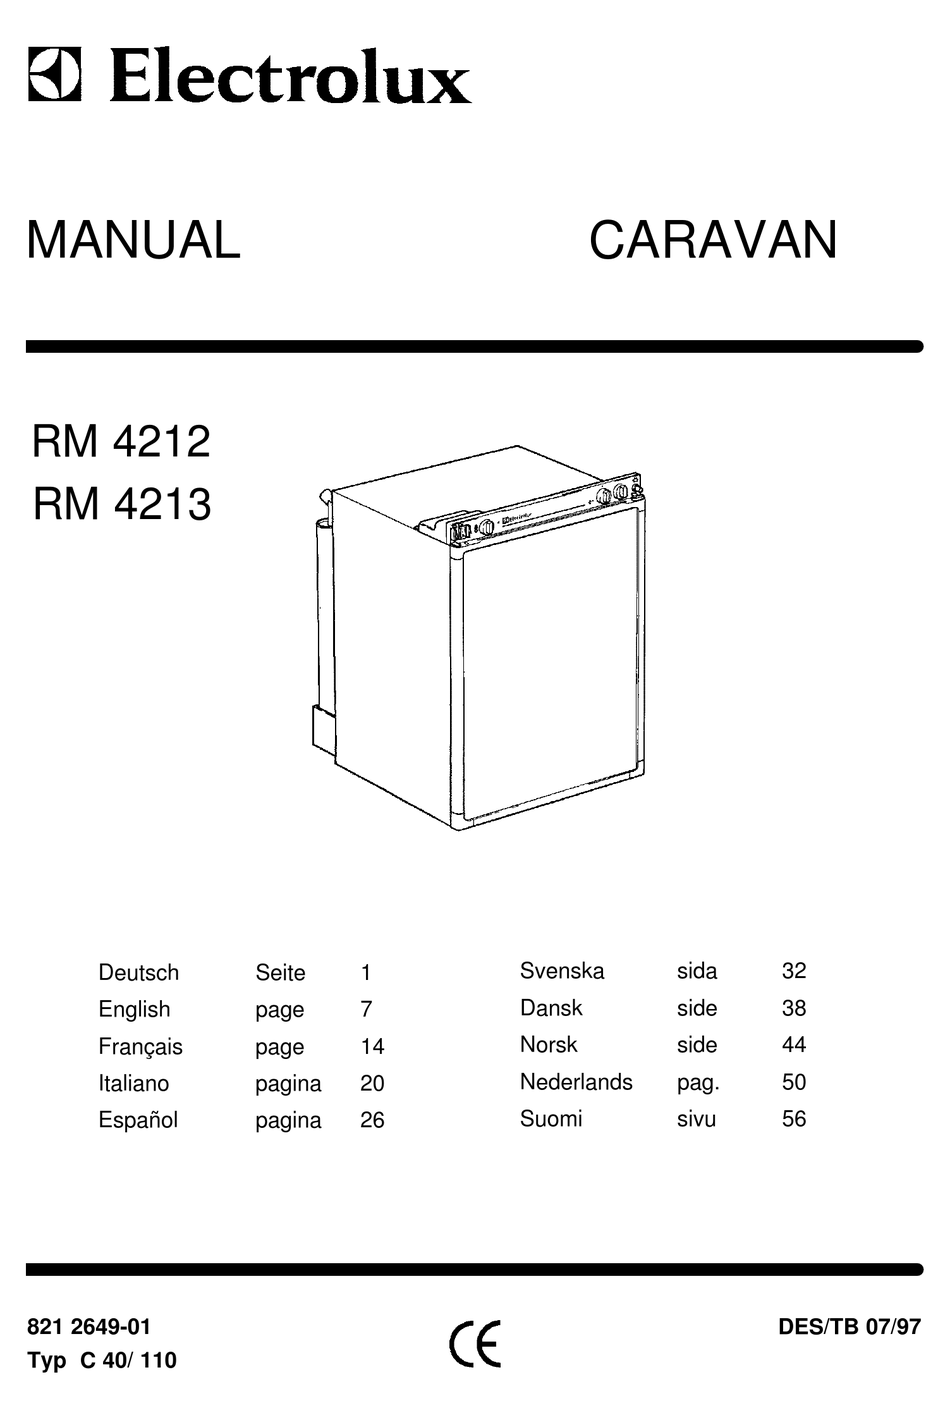 electrolux-rm-4212-user-manual-pdf-download-manualslib